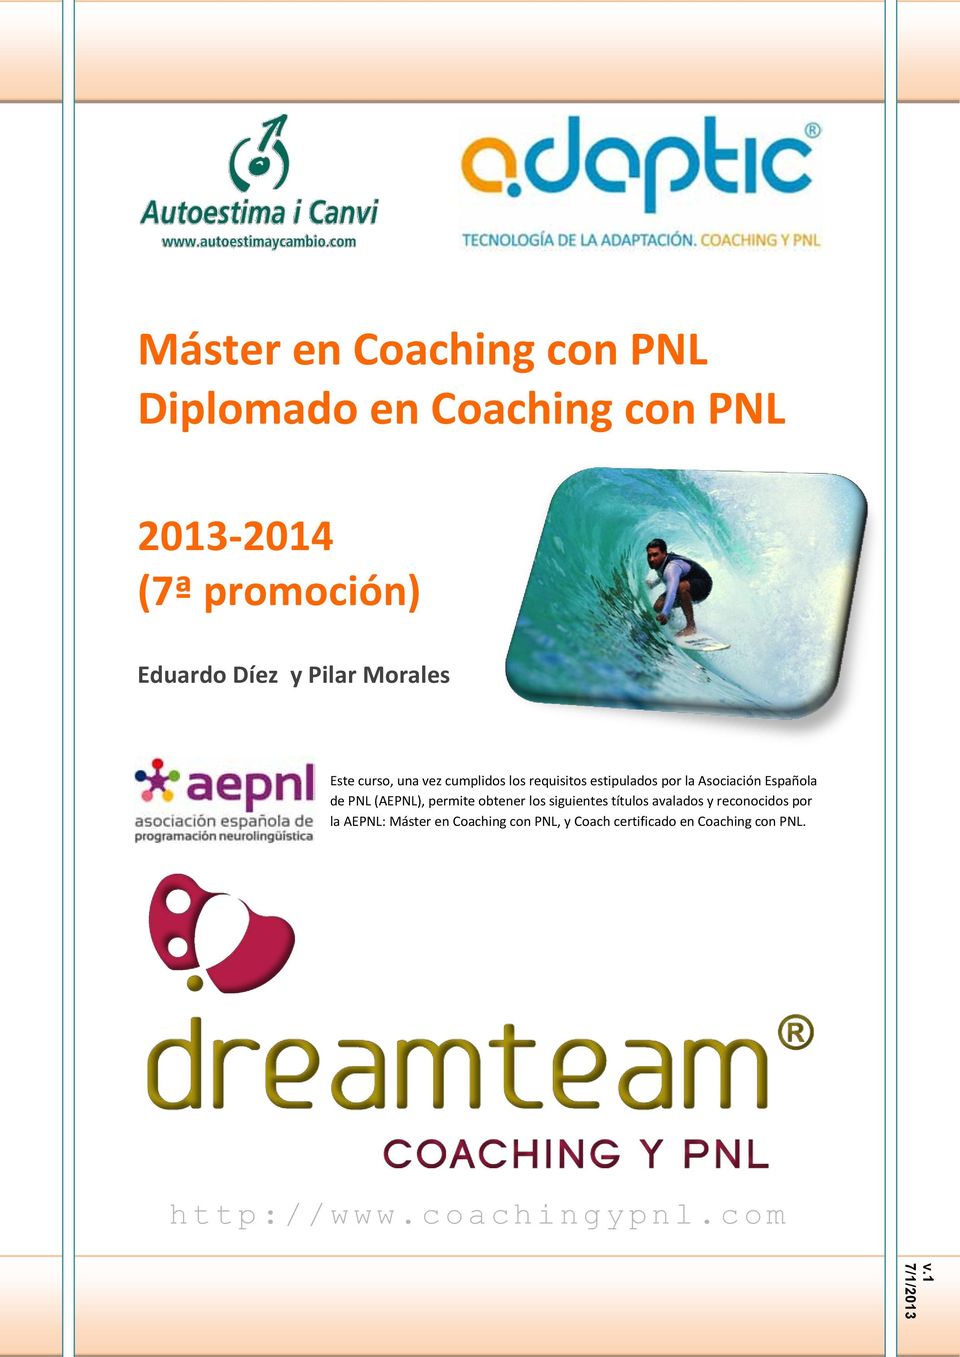 (AEPNL), permite obtener los siguientes títulos avalados y reconocidos por la AEPNL: Máster en Coaching